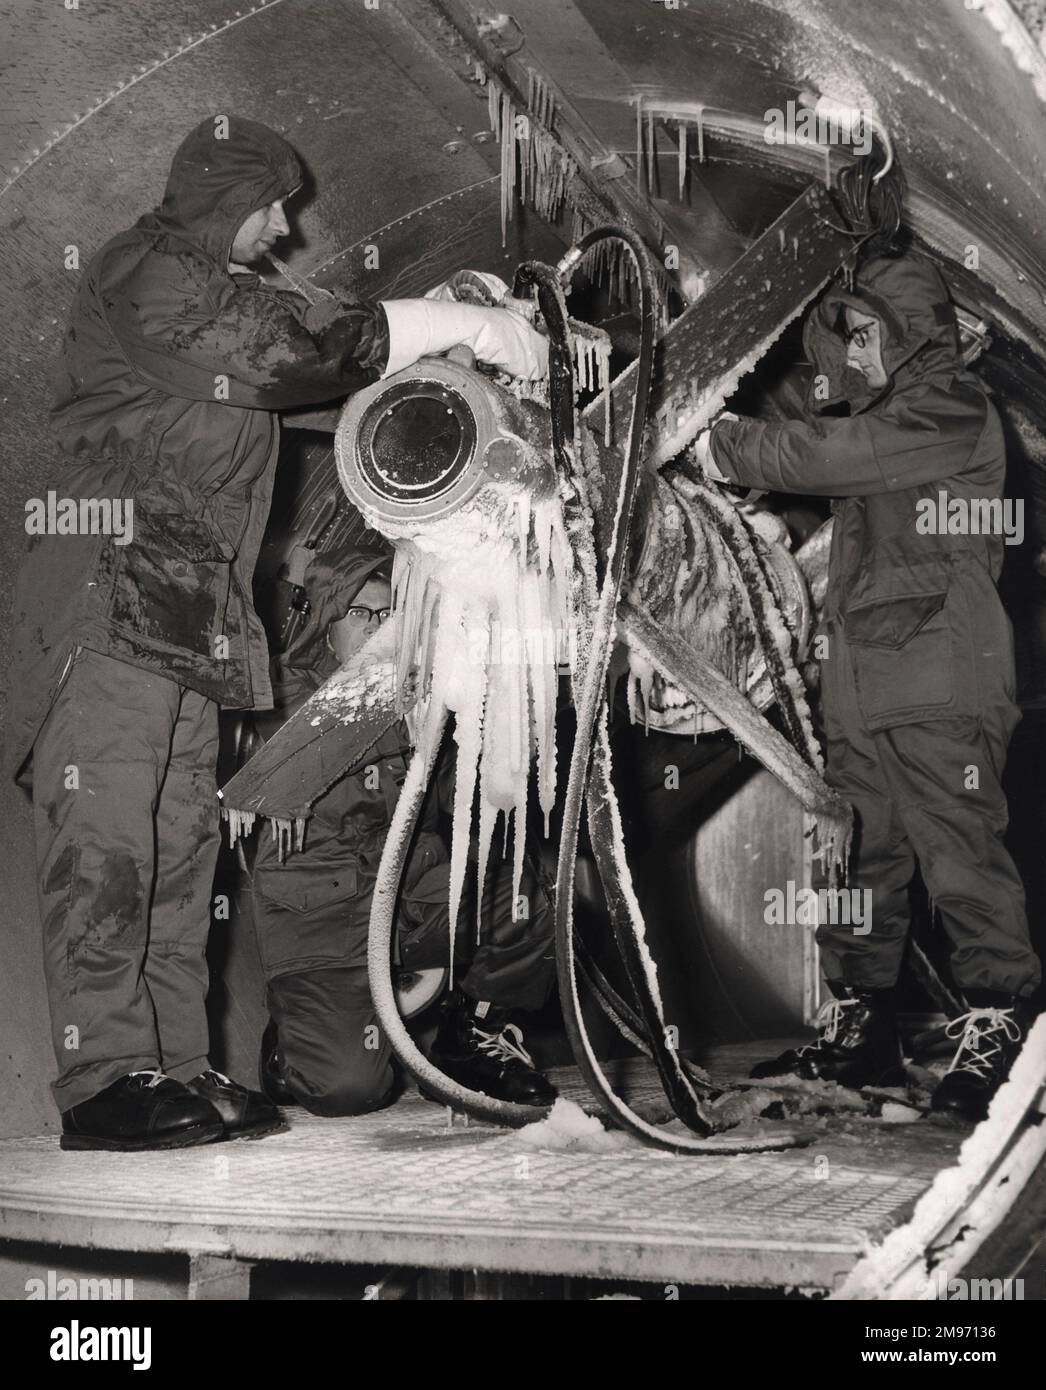 Un tecnico ispeziona un missile armstrong Whitworth Seaslug da nave ad aria dopo aver subito test a temperature artiche nella camera climatica dell'azienda. Novembre 1959. Foto Stock